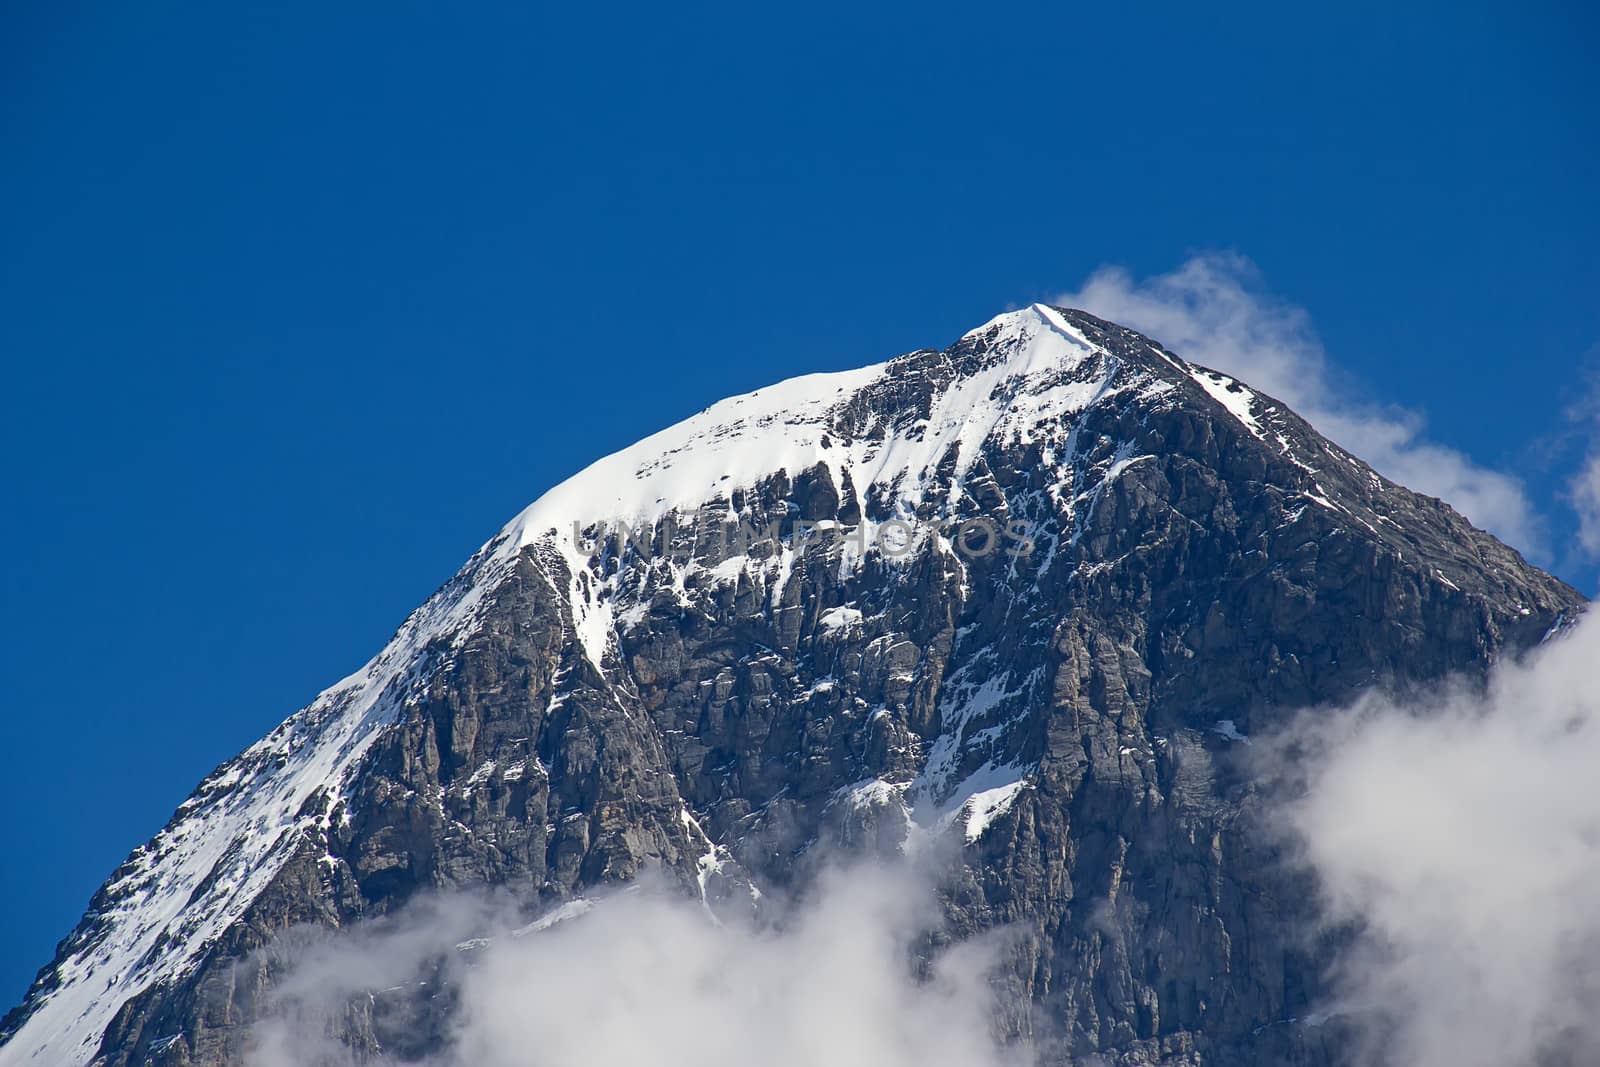 Eiger mountain in the Jungfrau region